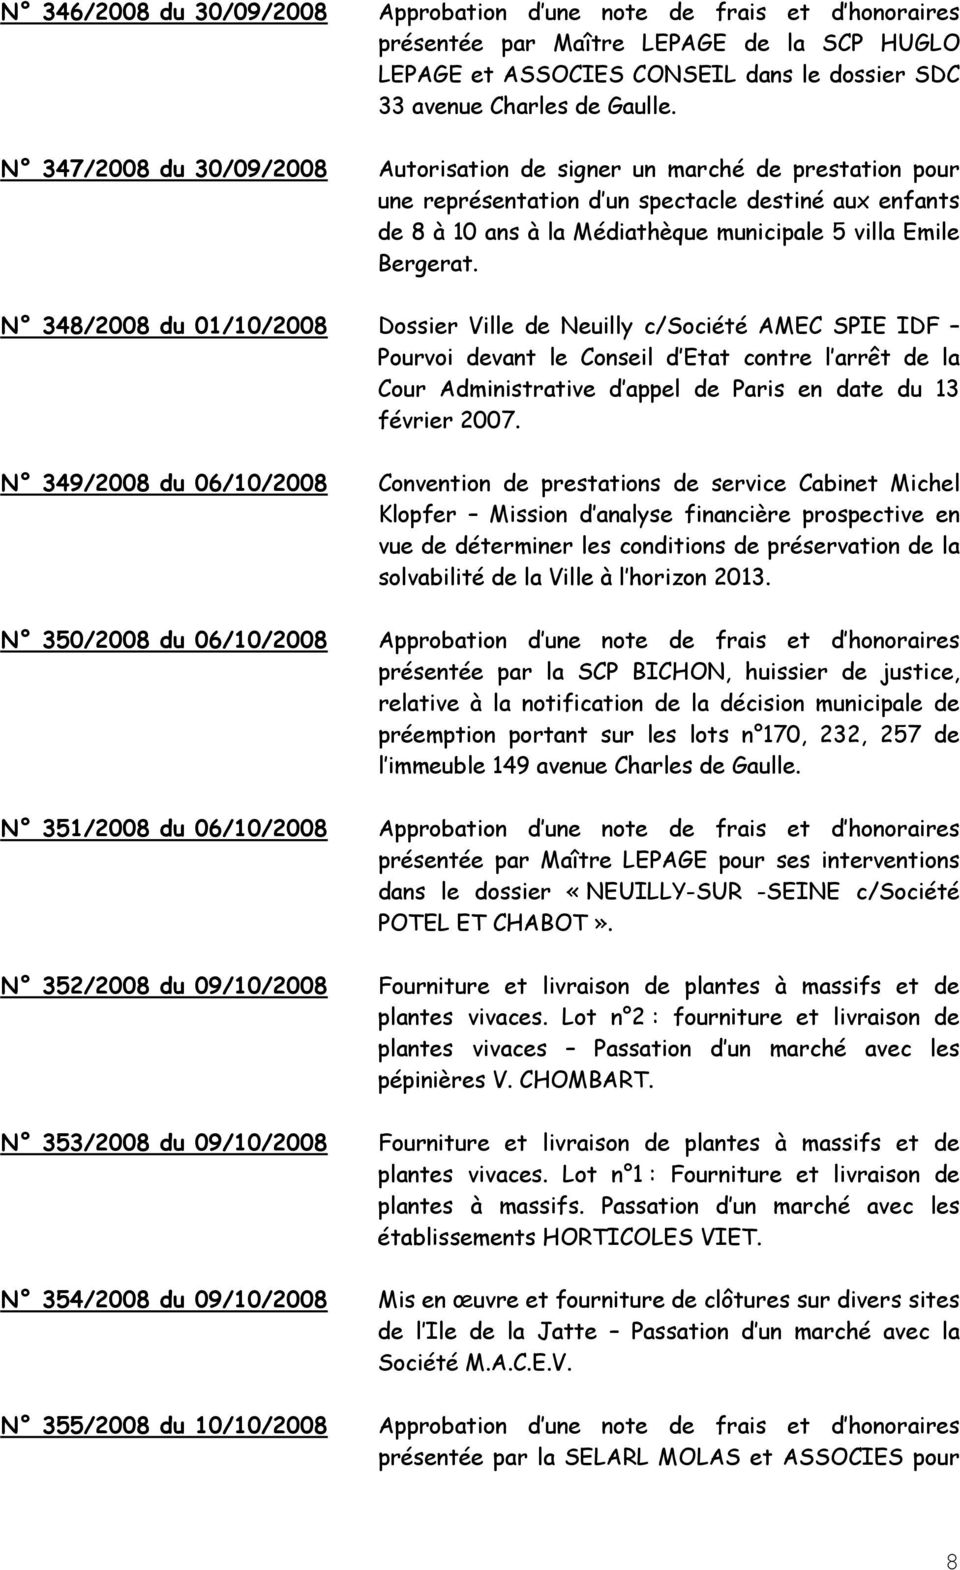 N 348/2008 du 01/10/2008 Dossier Ville de Neuilly c/société AMEC SPIE IDF Pourvoi devant le Conseil d Etat contre l arrêt de la Cour Administrative d appel de Paris en date du 13 février 2007.